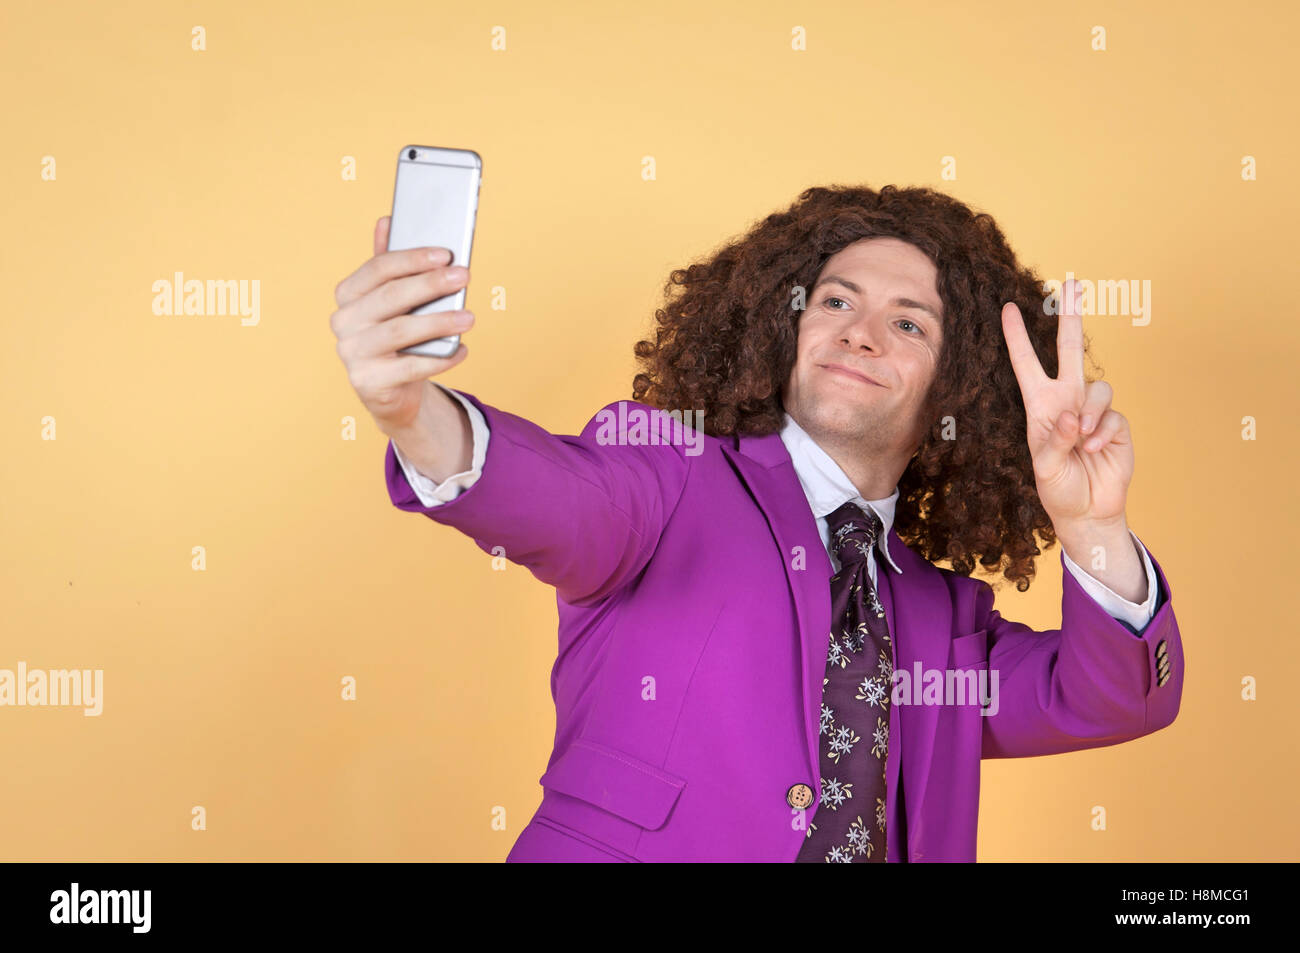 Uomo caucasico con Afro indossa vestito viola prendendo un selfie Foto Stock